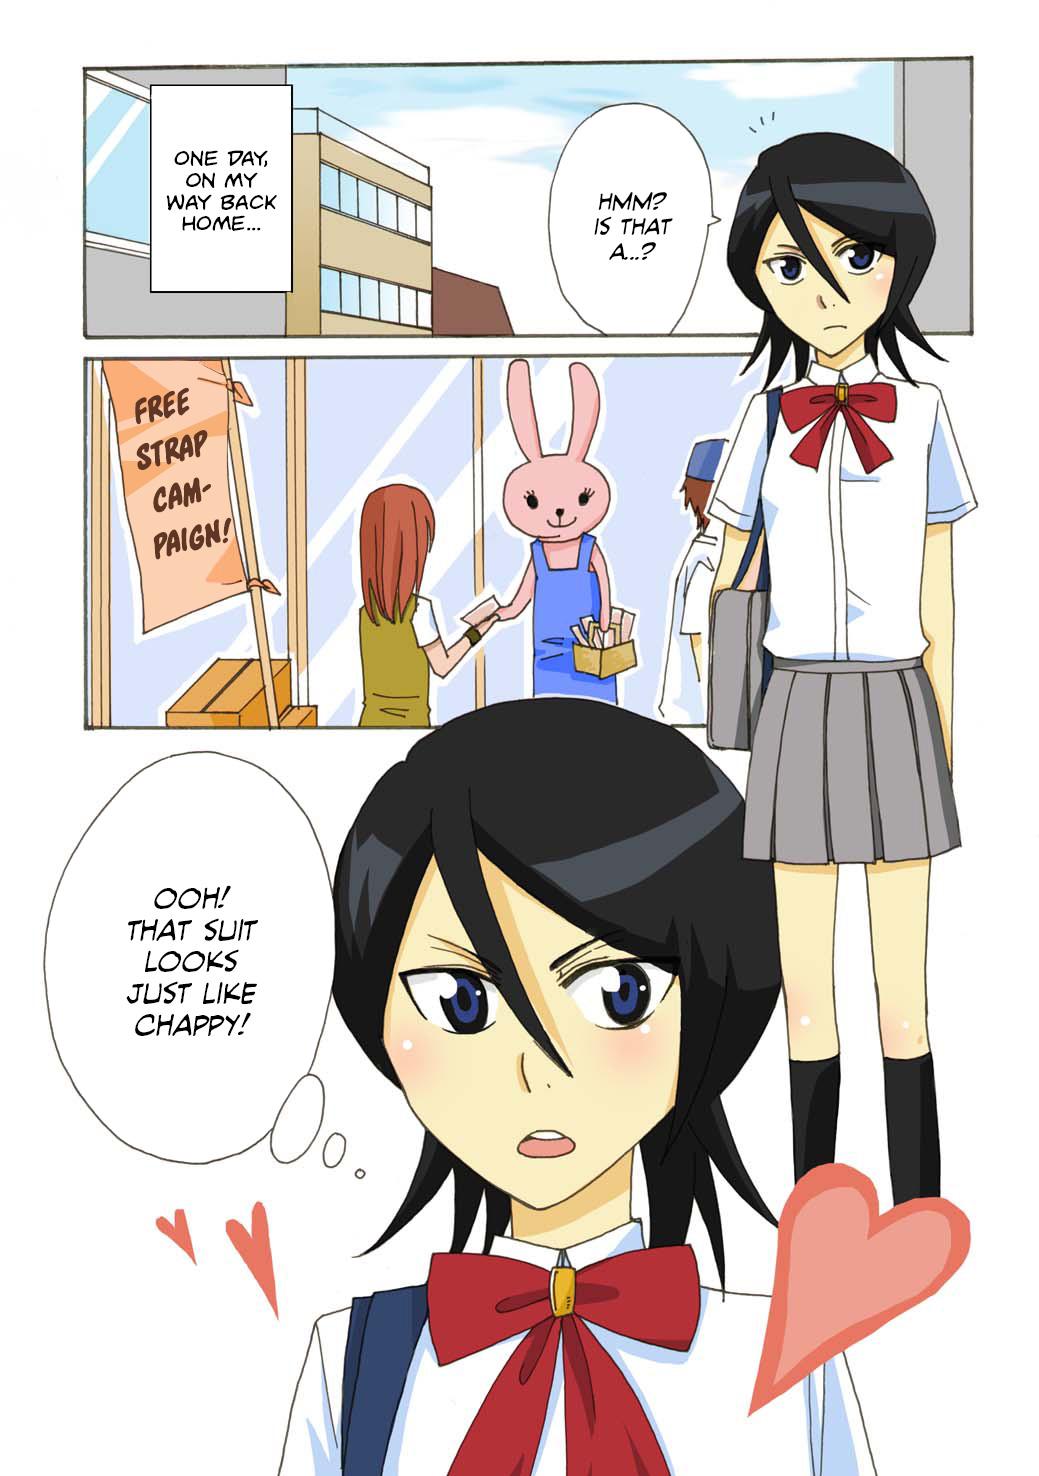 Usagi-san ni ki wo tsukete! | Beware of Mr. Bunny! 1